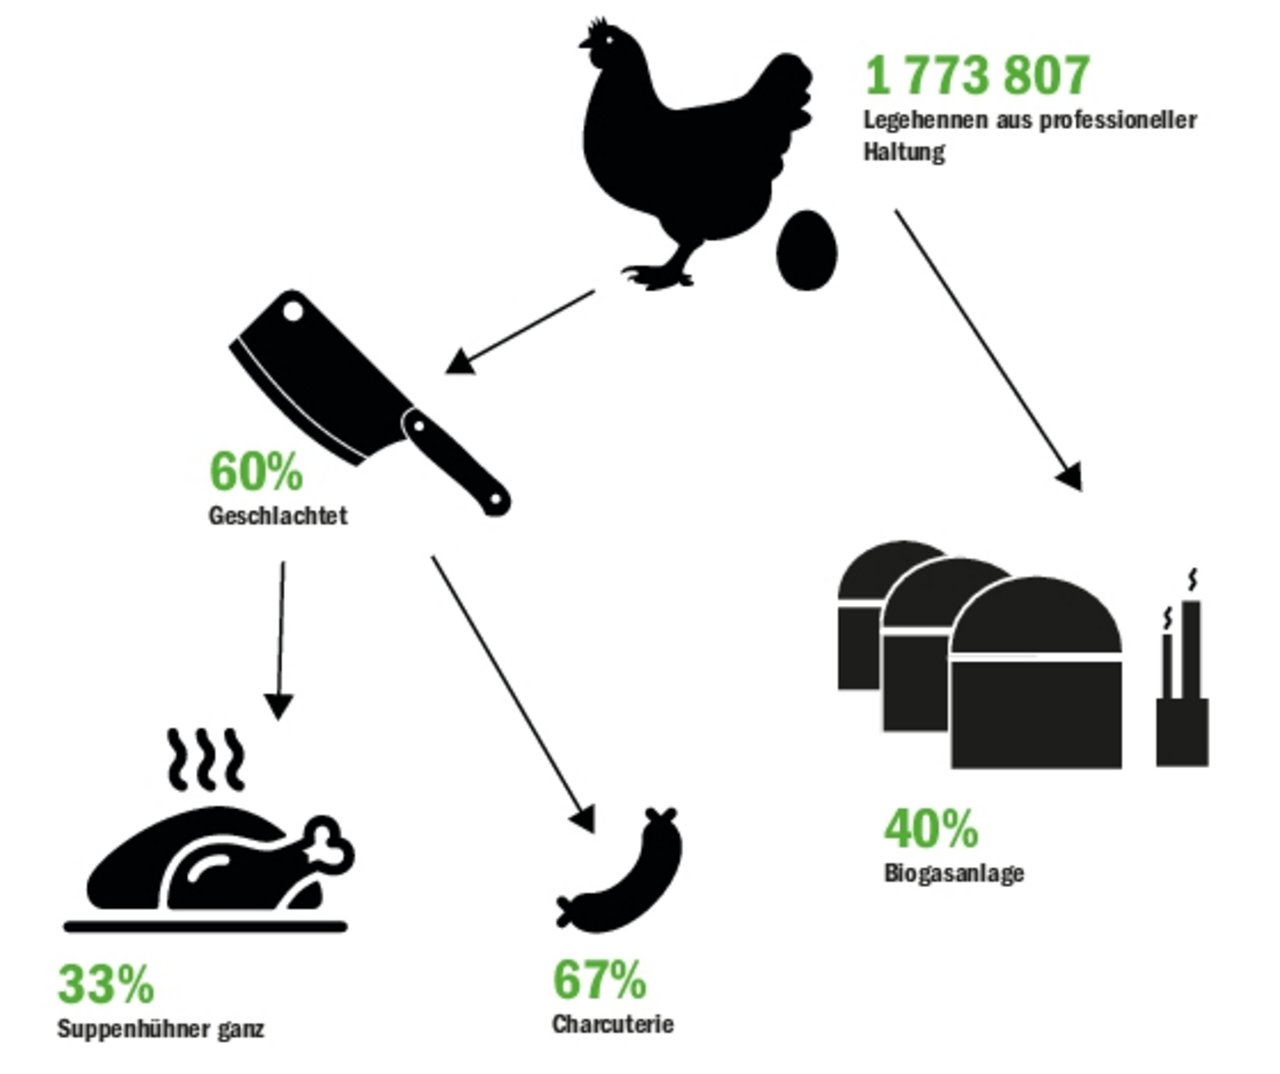 Charcuterie von Legehennen ist beliebter als die ganzen Suppenhühner. Ein Teil der Tiere geht nach der Tötung direkt in die Biogasanlage. (Grafik BauZ)